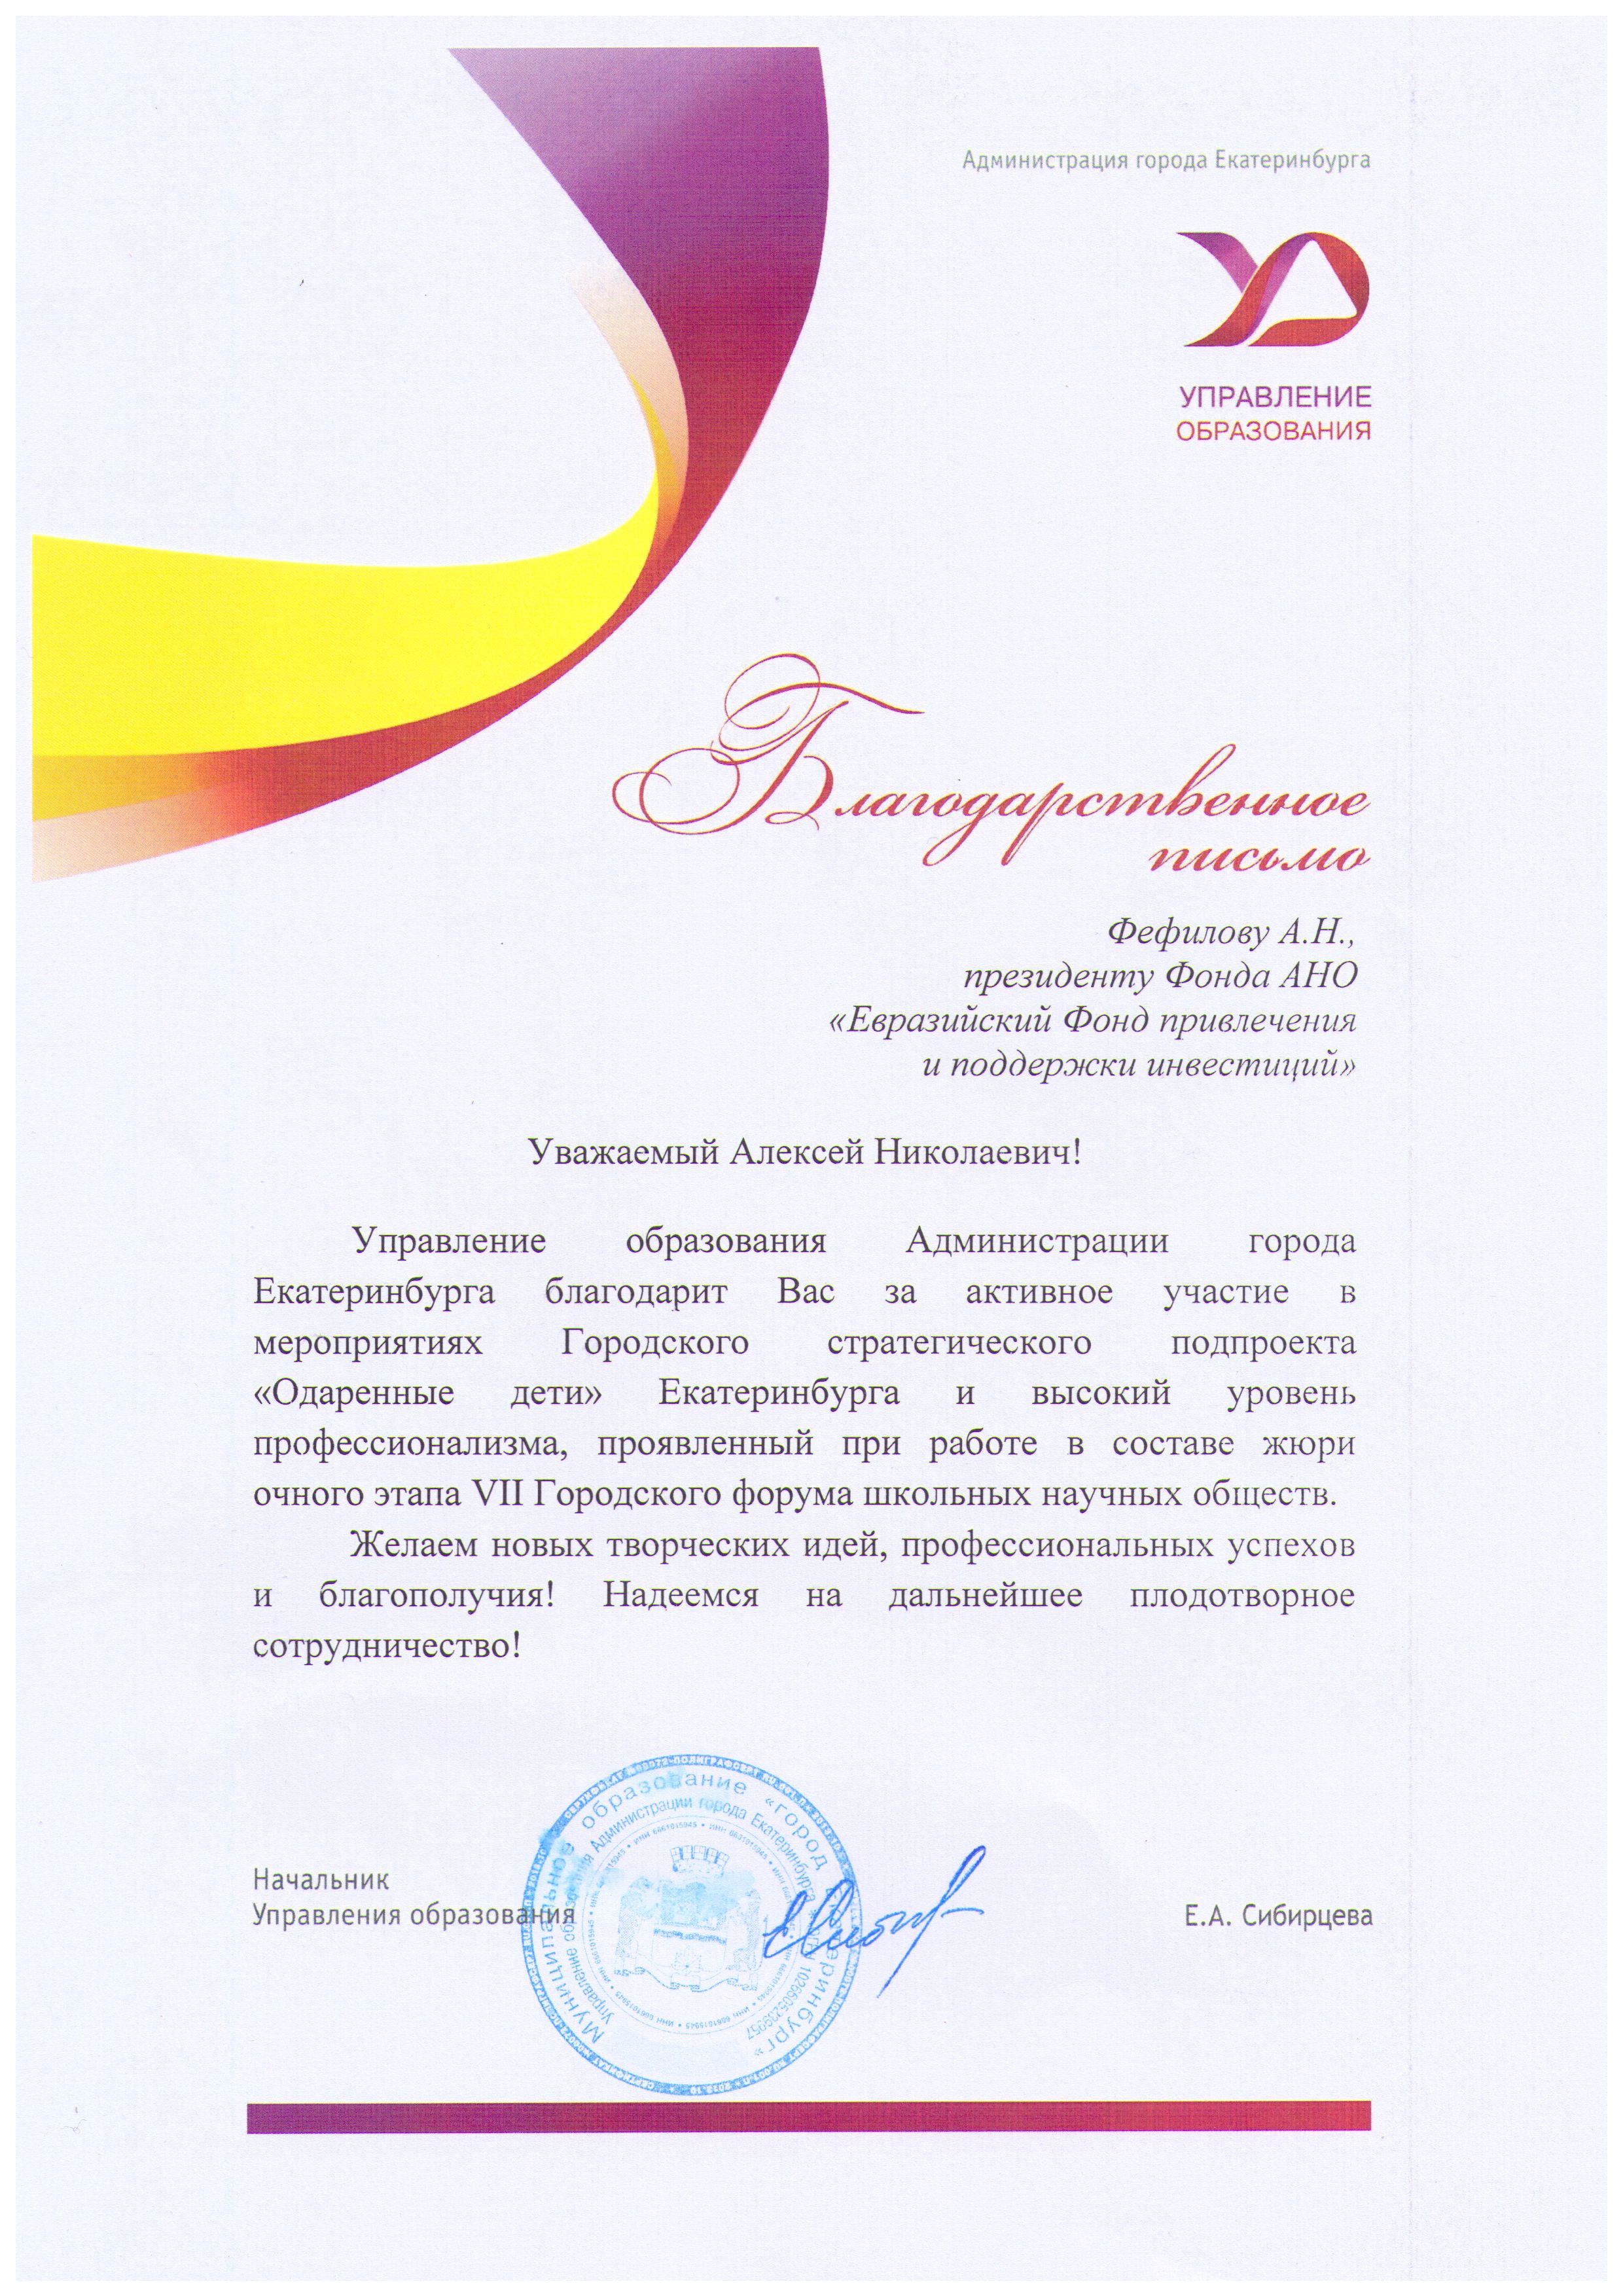 Благодарность Управления образования Екатеринбурга 11 февраля  2017 г